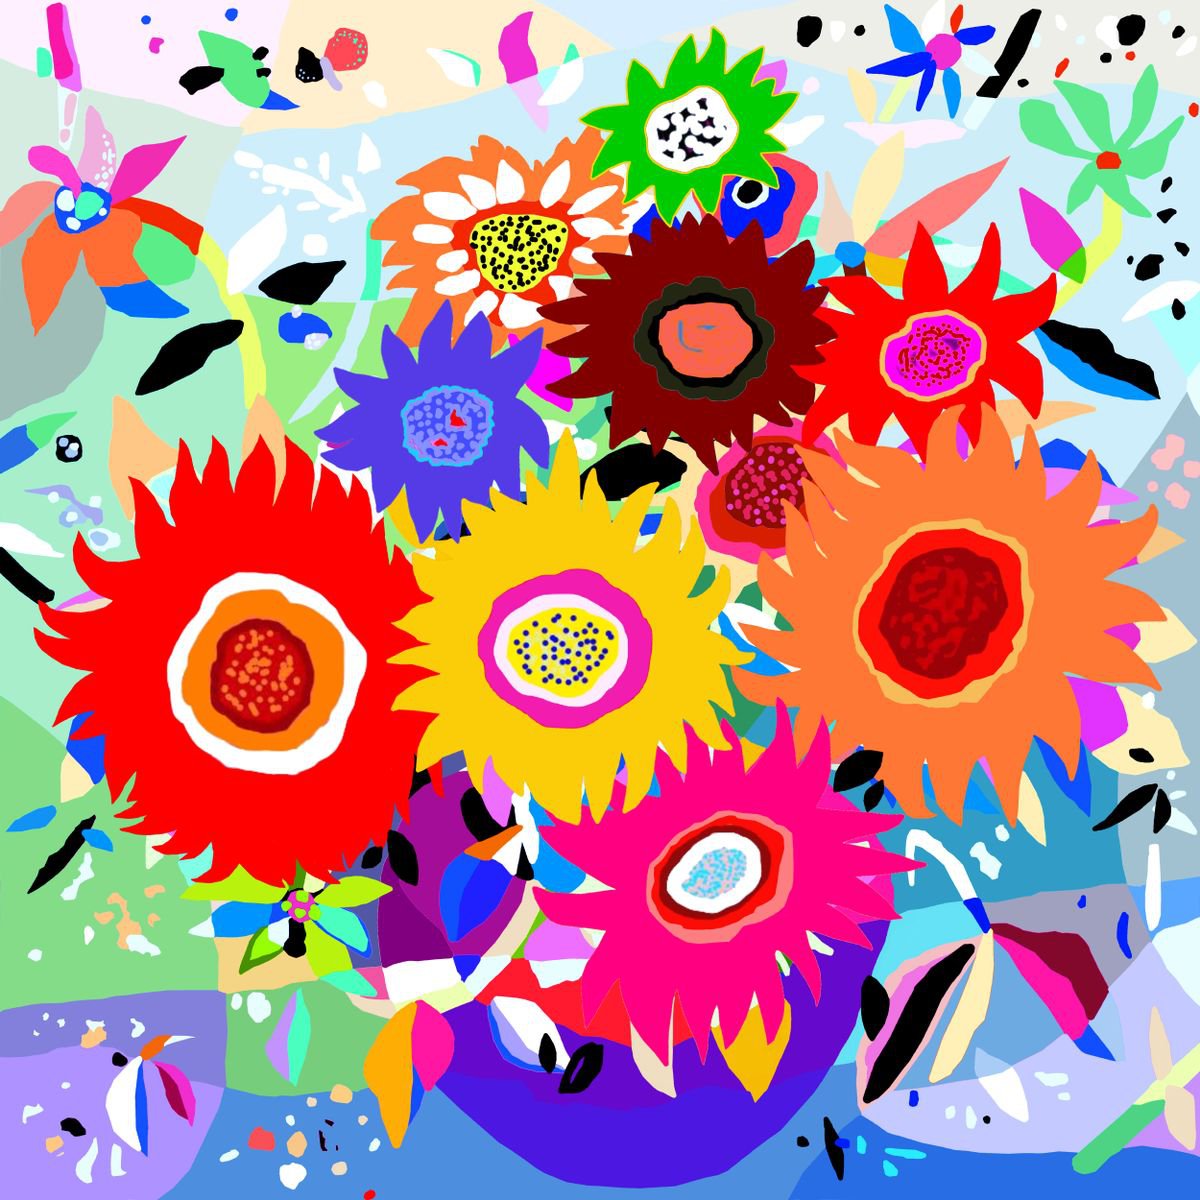 Sunflowers/ Girasoles (pop art, landscape) by Alejos